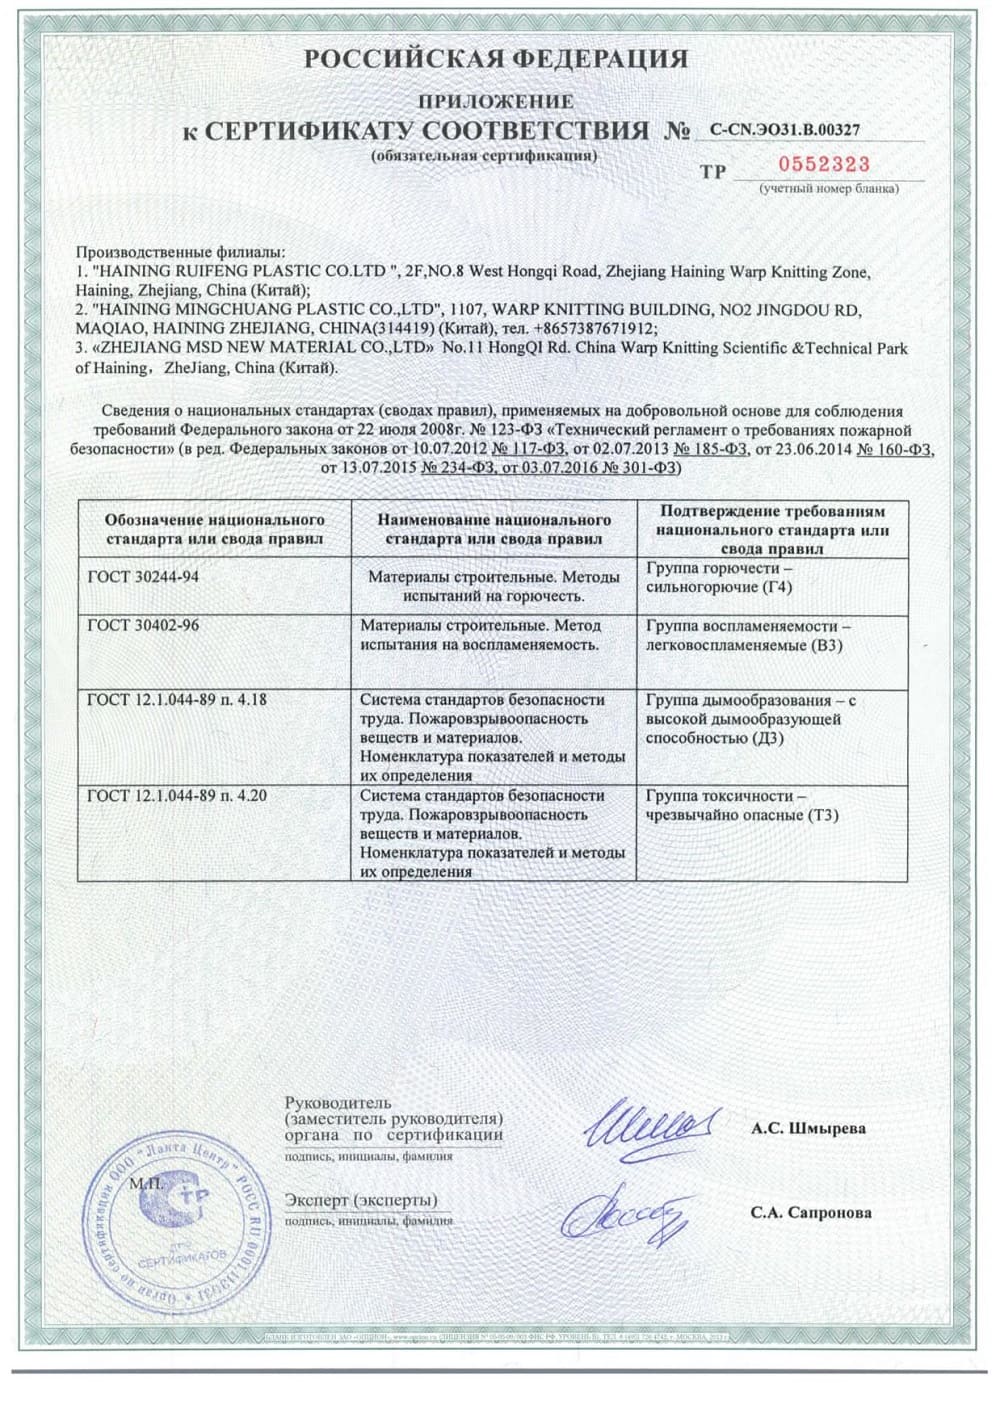 Сертификат соответствия на натяжные полотна голубого цвета